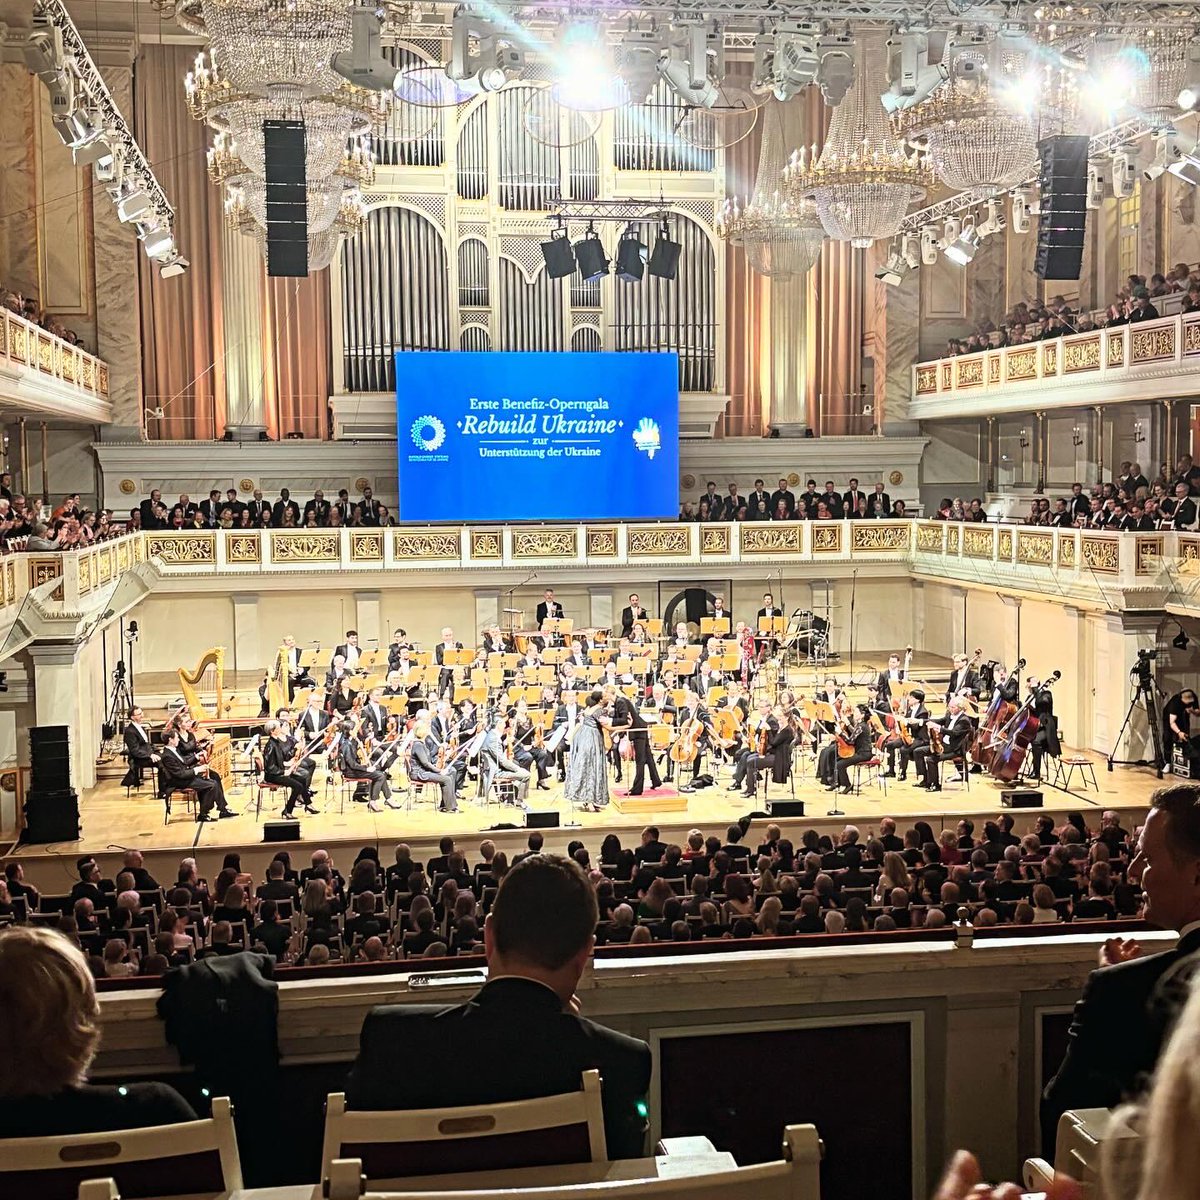 V petek, 19.4. je v berlinskem Konzerthausu potekal dobrodelni gala koncert opernih arij z naslovom 'Rebuild Ukraine', ki ga je organizirala 🇩🇪fundacija Harald Christ. Namen prve slavnostne operne gala prireditve je bil poslati znak solidarnosti in podpore 🇺🇦.
#rebuildukraine